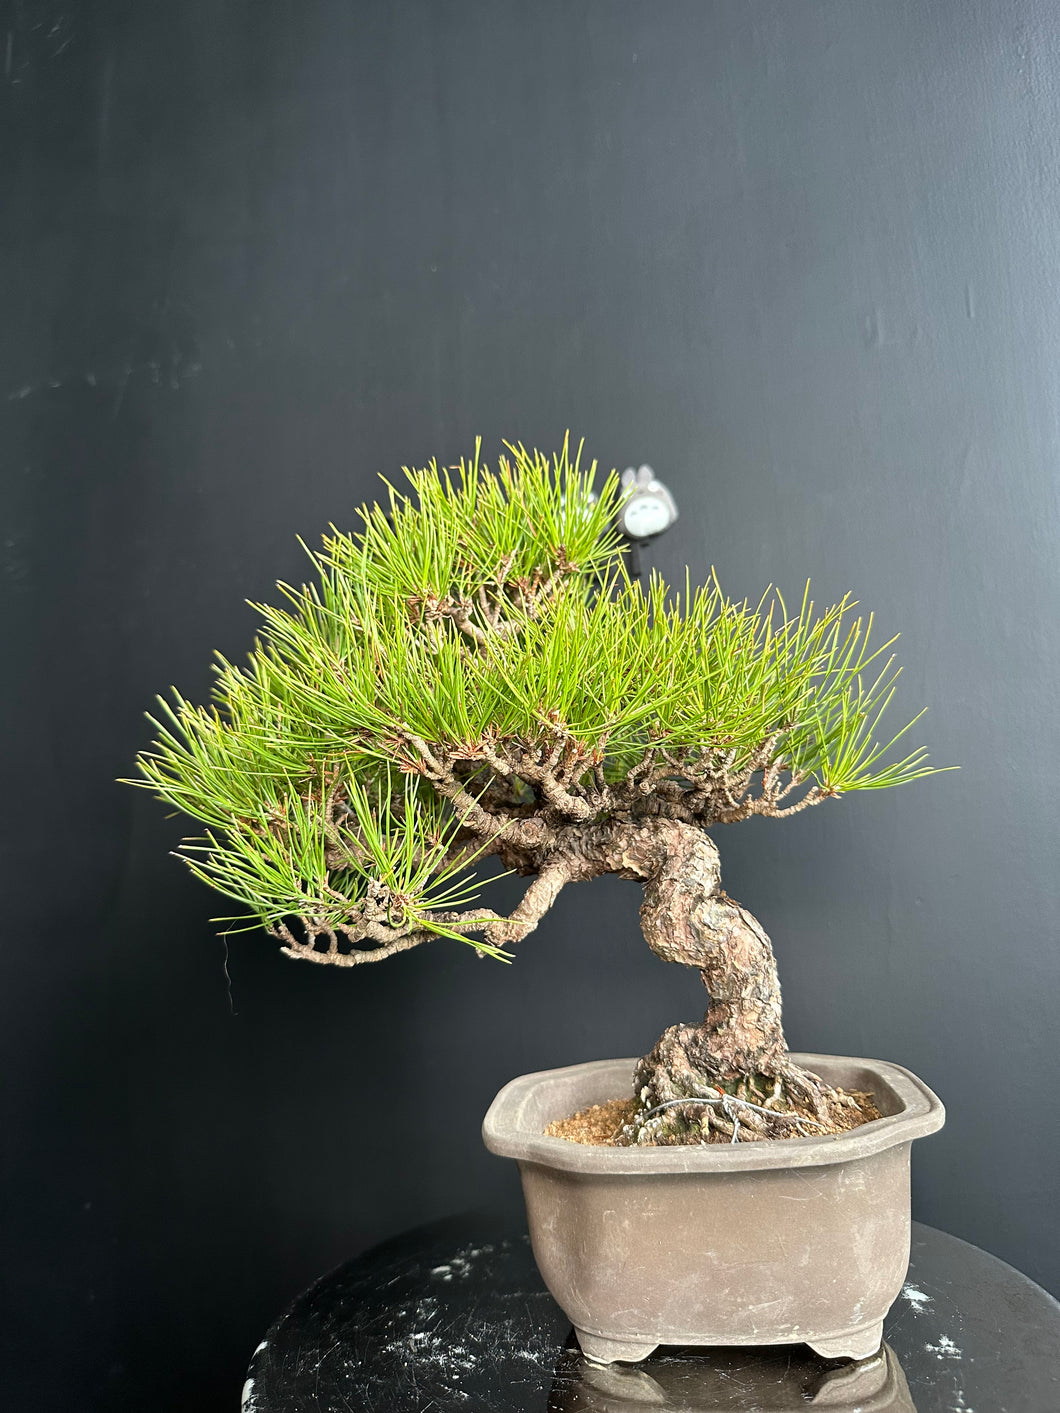 日本🇯🇵 赤松 Red Pine / Pinus Densiflora (附上影片)